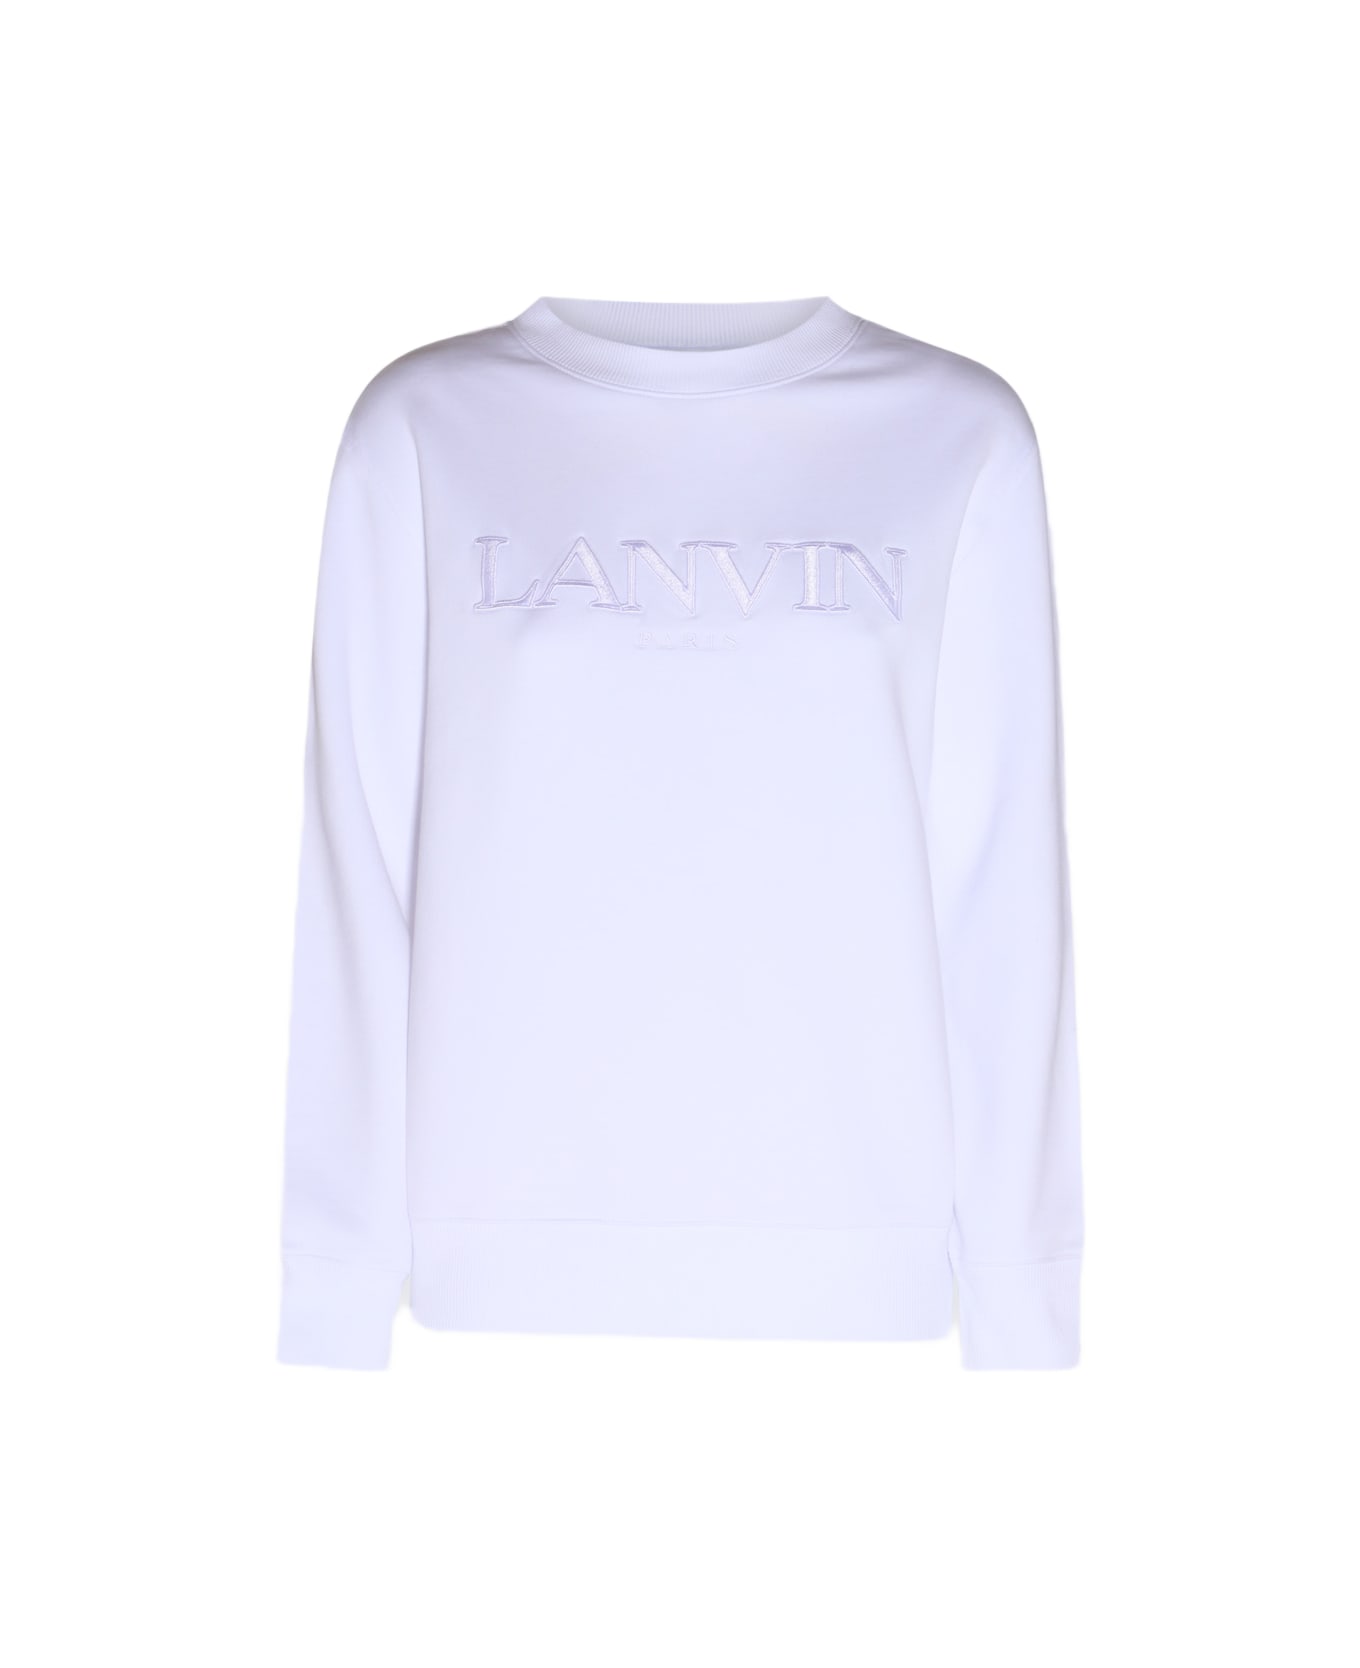 Lanvin White Cotton Sweatshirt - White フリース